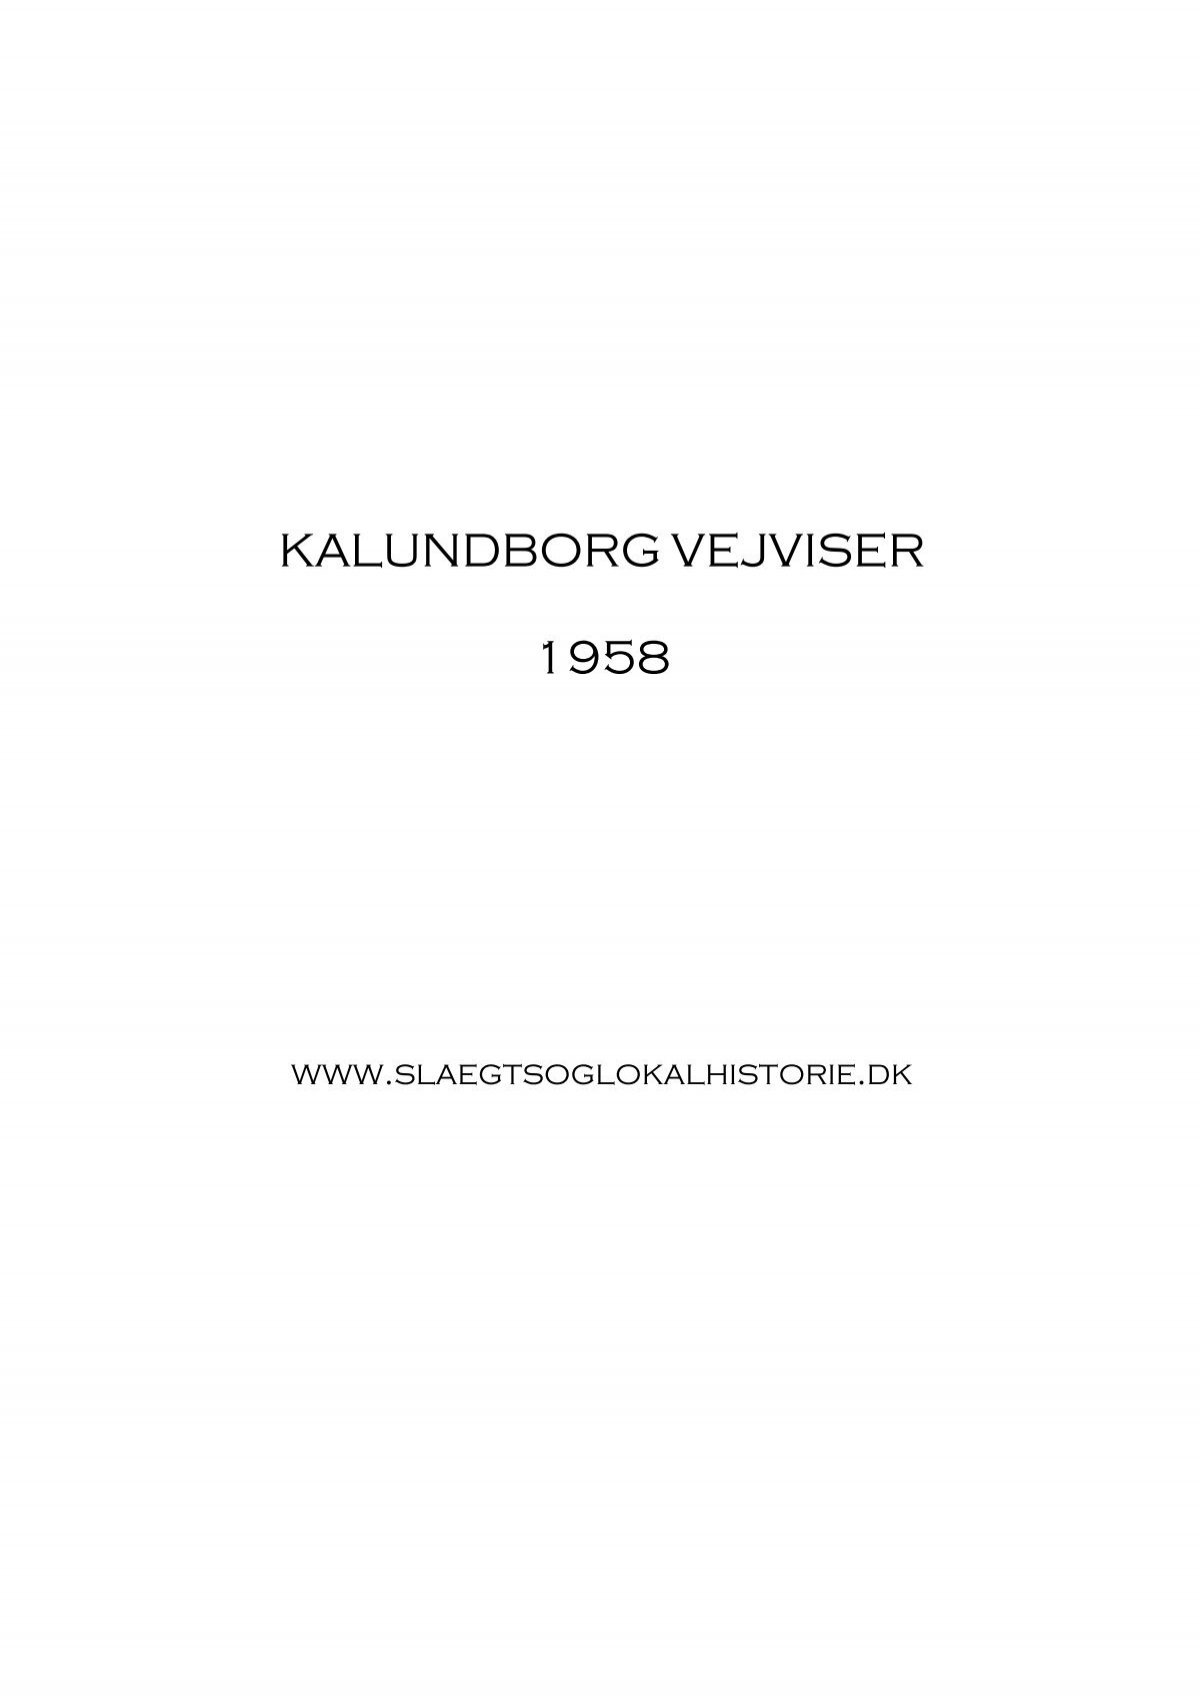 elite Væve blad Kalundborg Vejviser 1958 [PDF] ca. 59 Mbyte